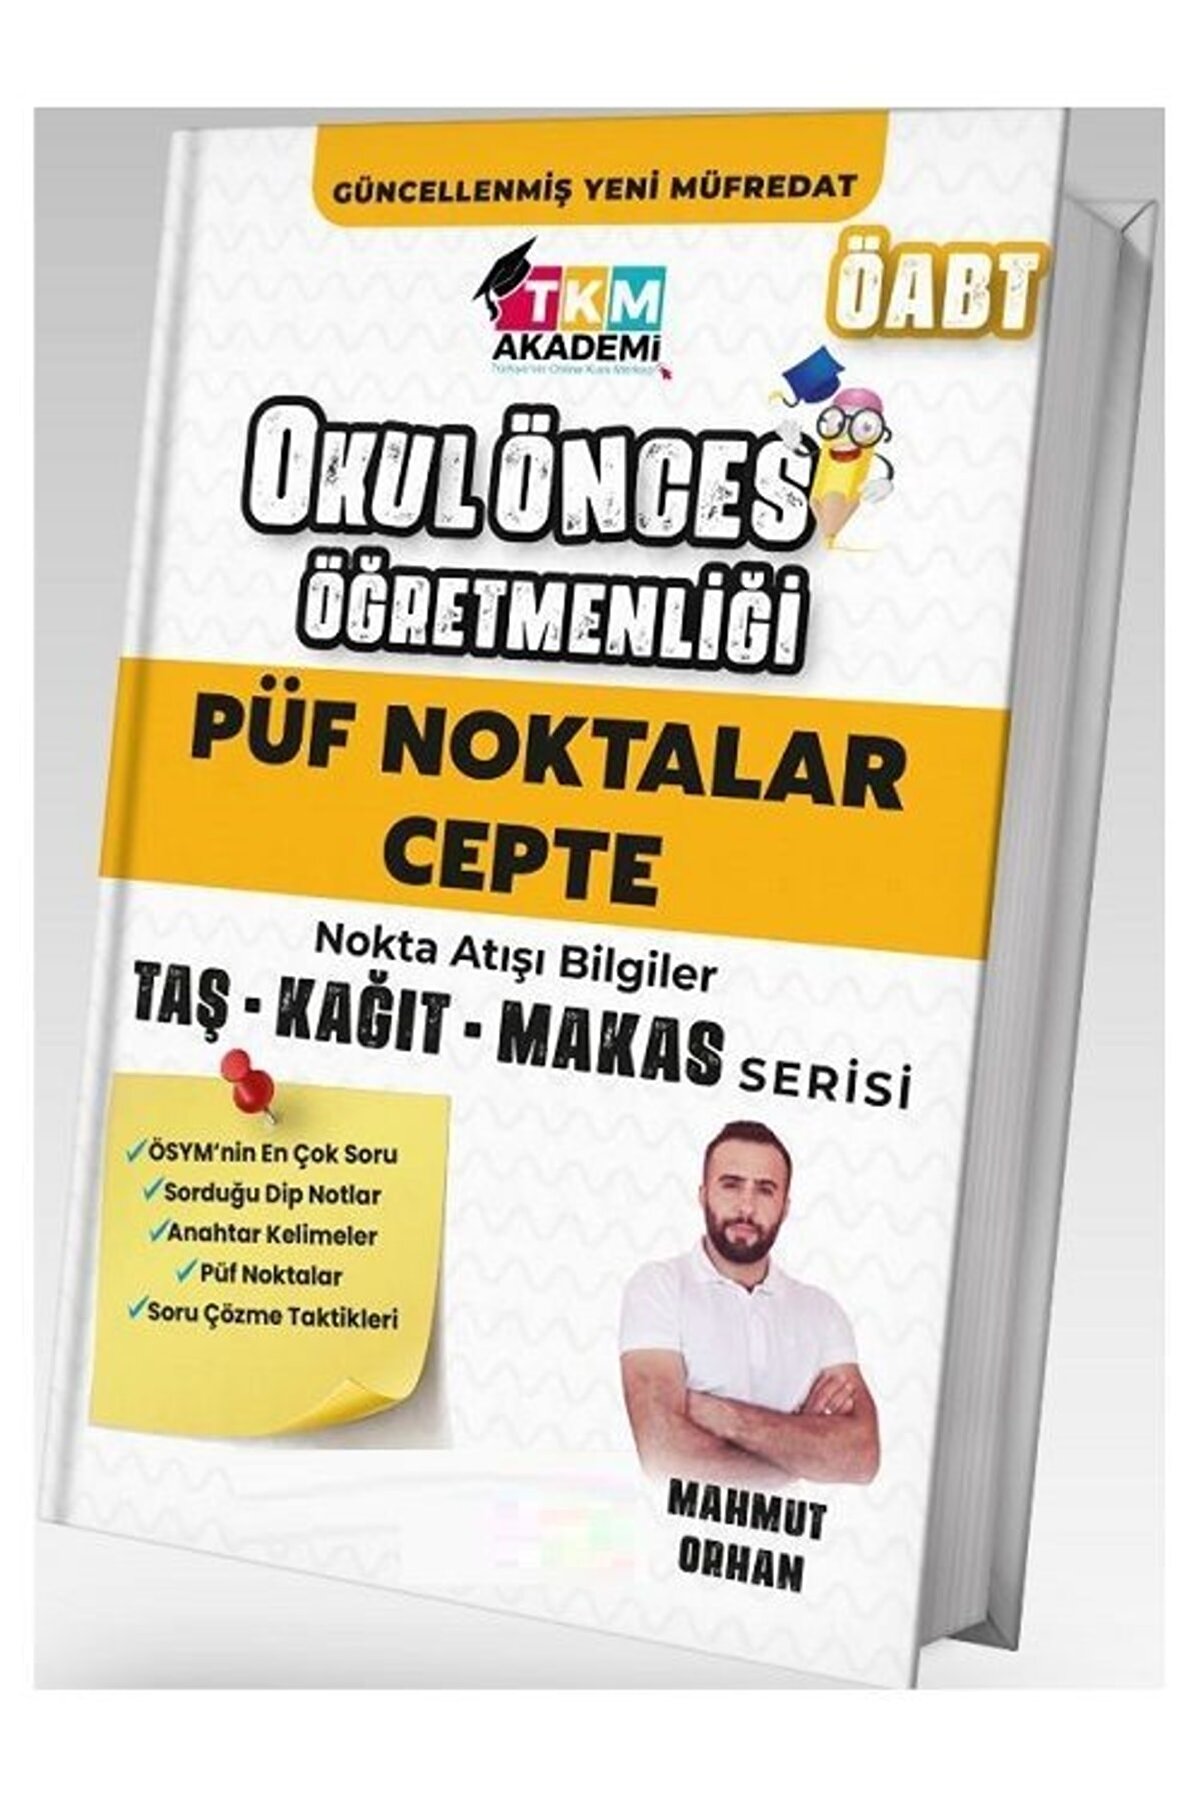 TKM Akademi Öabt Okul Öncesi Öğretmenliği Püf Noktalar Cepte Nokta Atışı Bilgiler - Mahmut Orhan